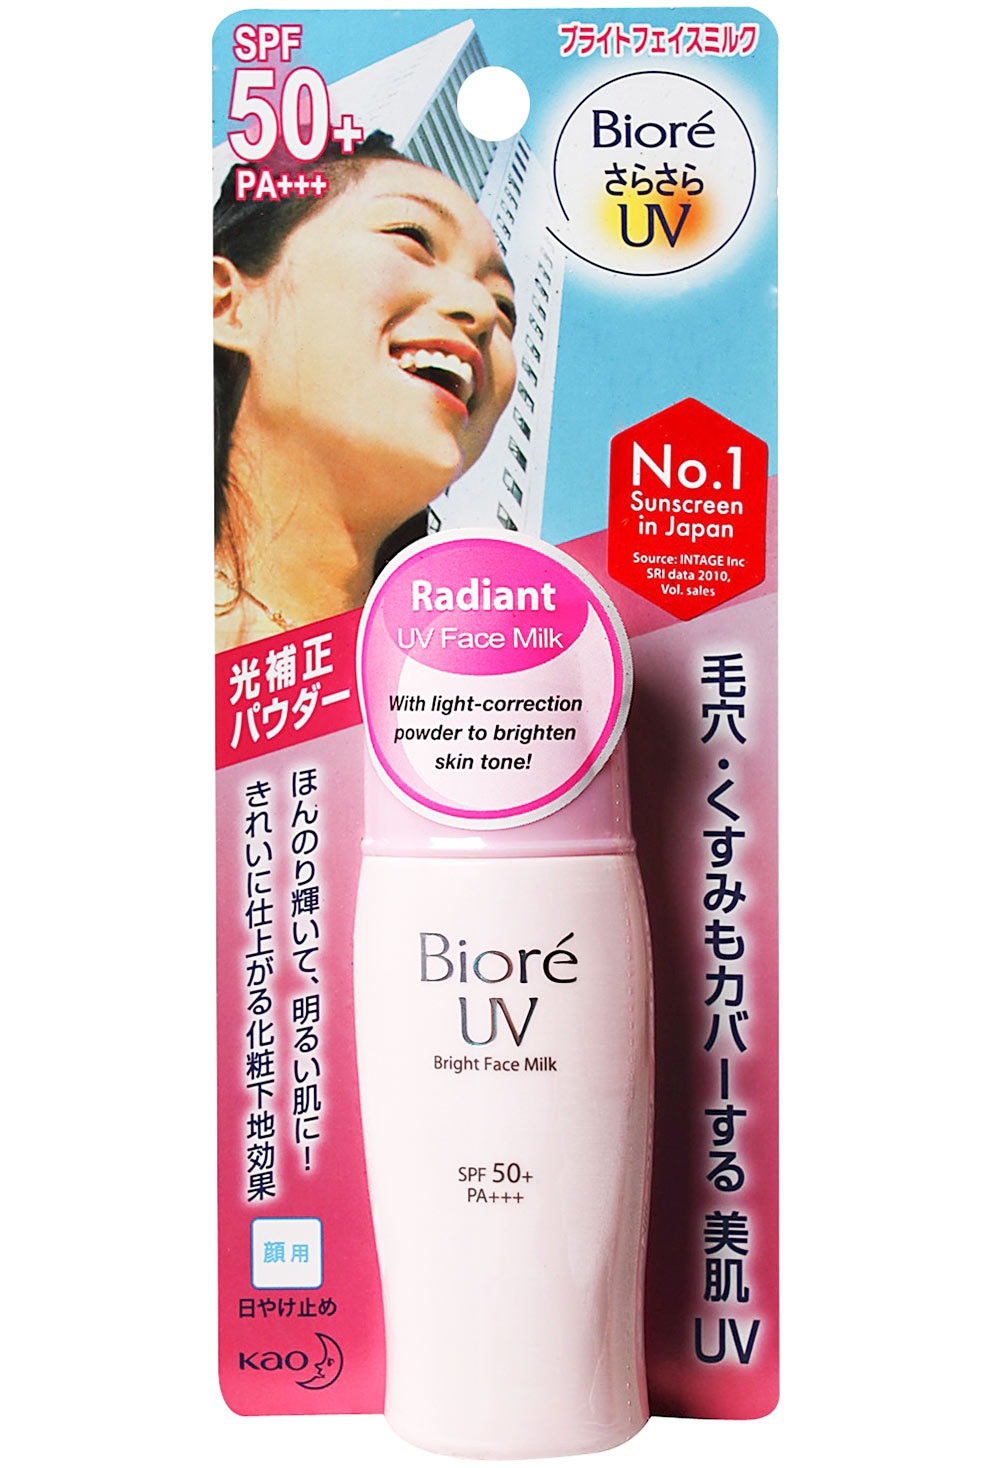 Kem chống nắng biore màu hồng Bioré UV Bright Face Milk chống nắng hiệu quả, dưỡng da an toàn, thiết kế nhỏ gọn, tiện dụng và giá cả phải chăng